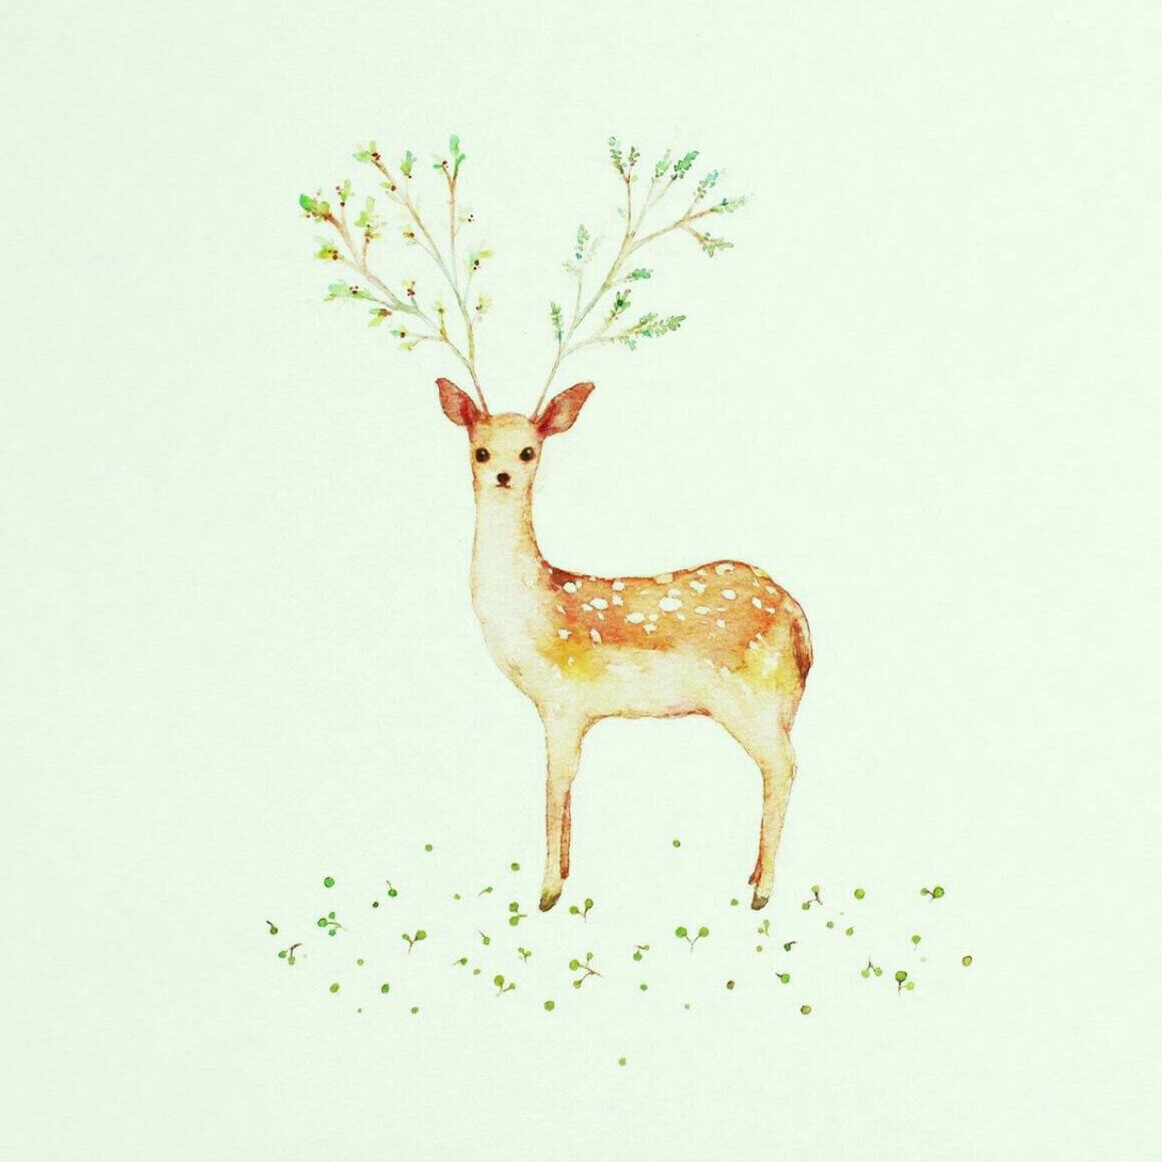 手绘 水彩 插画 小清新 动物 鹿